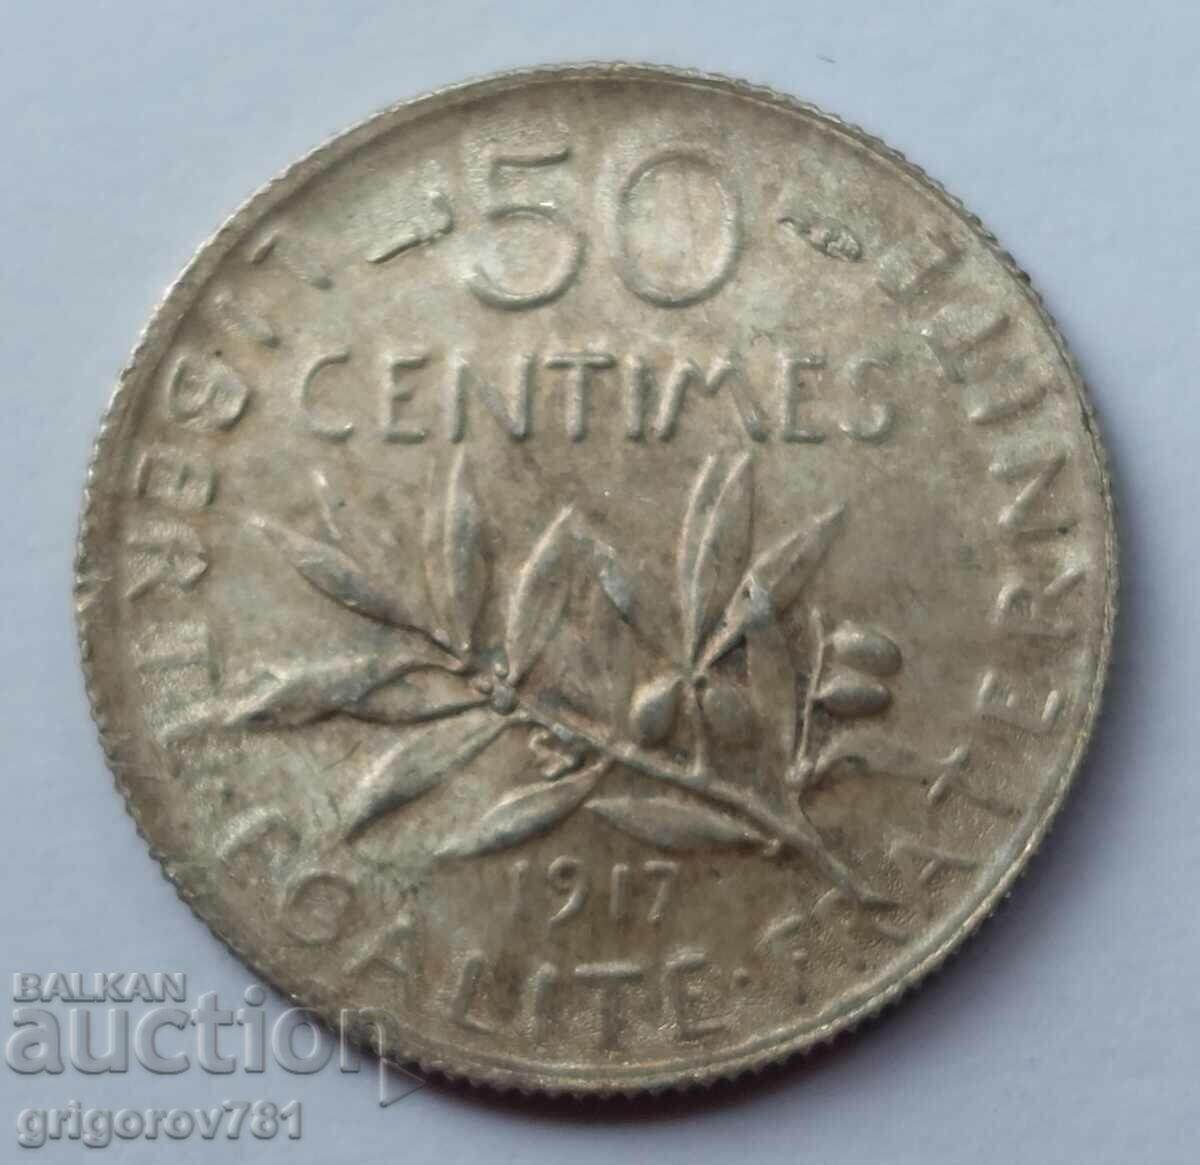 Ασημένιο 50 εκατοστά Γαλλία 1917 - ασημένιο νόμισμα №39